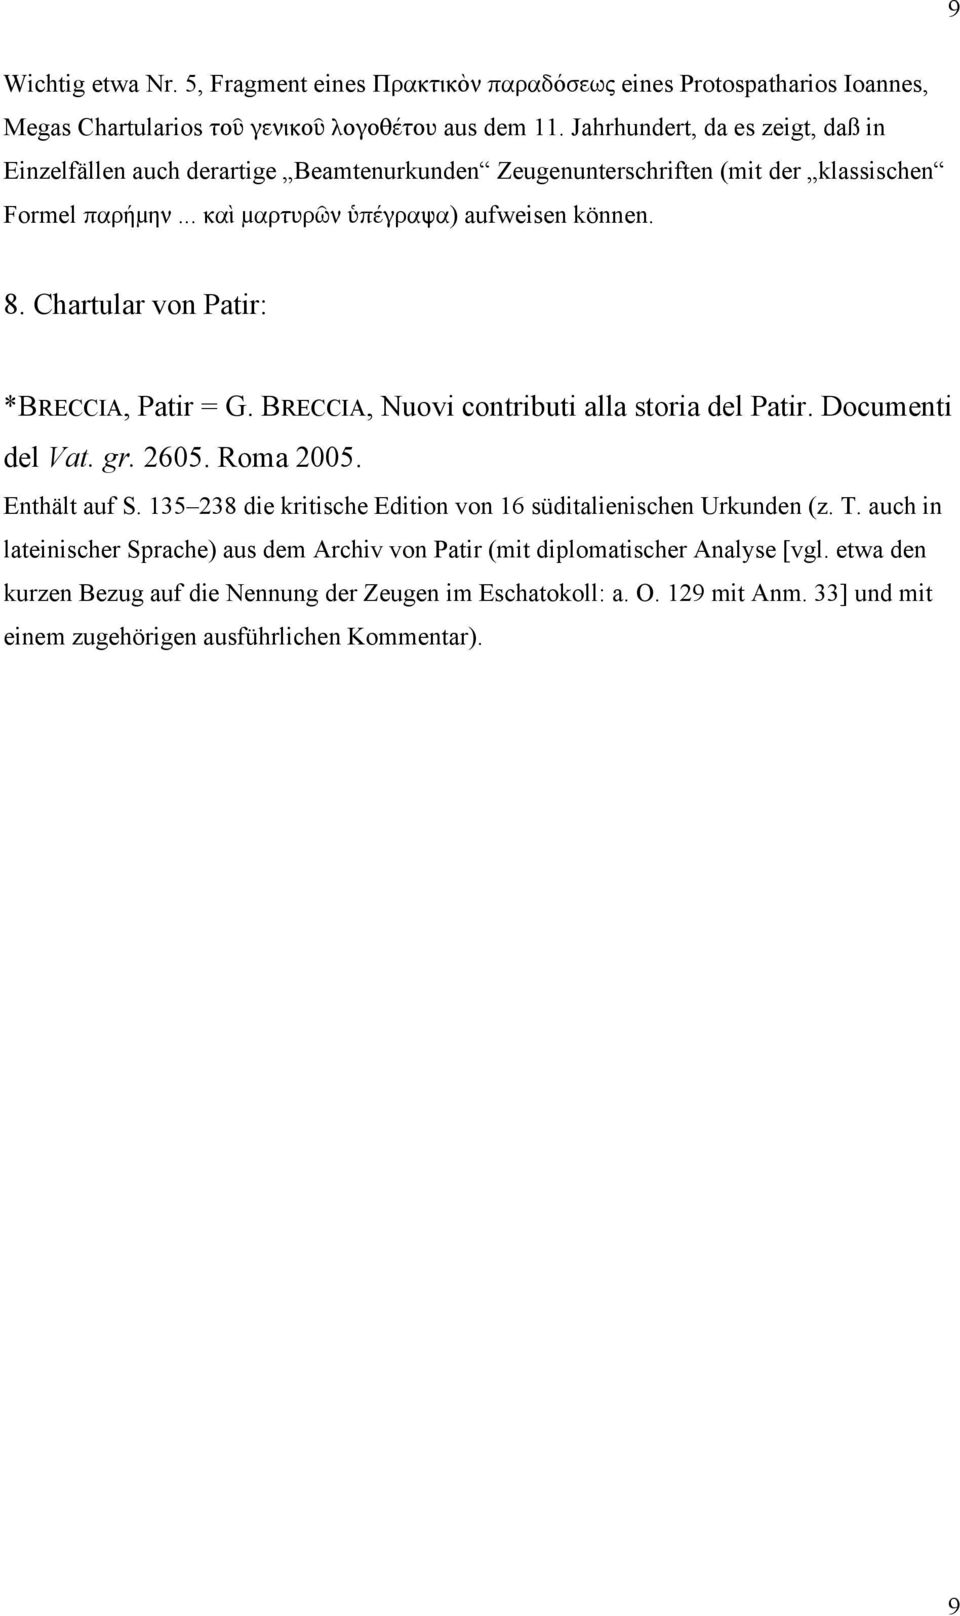 Chartular von Patir: *BRECCIA, Patir = G. BRECCIA, Nuovi contributi alla storia del Patir. Documenti del Vat. gr. 2605. Roma 2005. Enthält auf S.